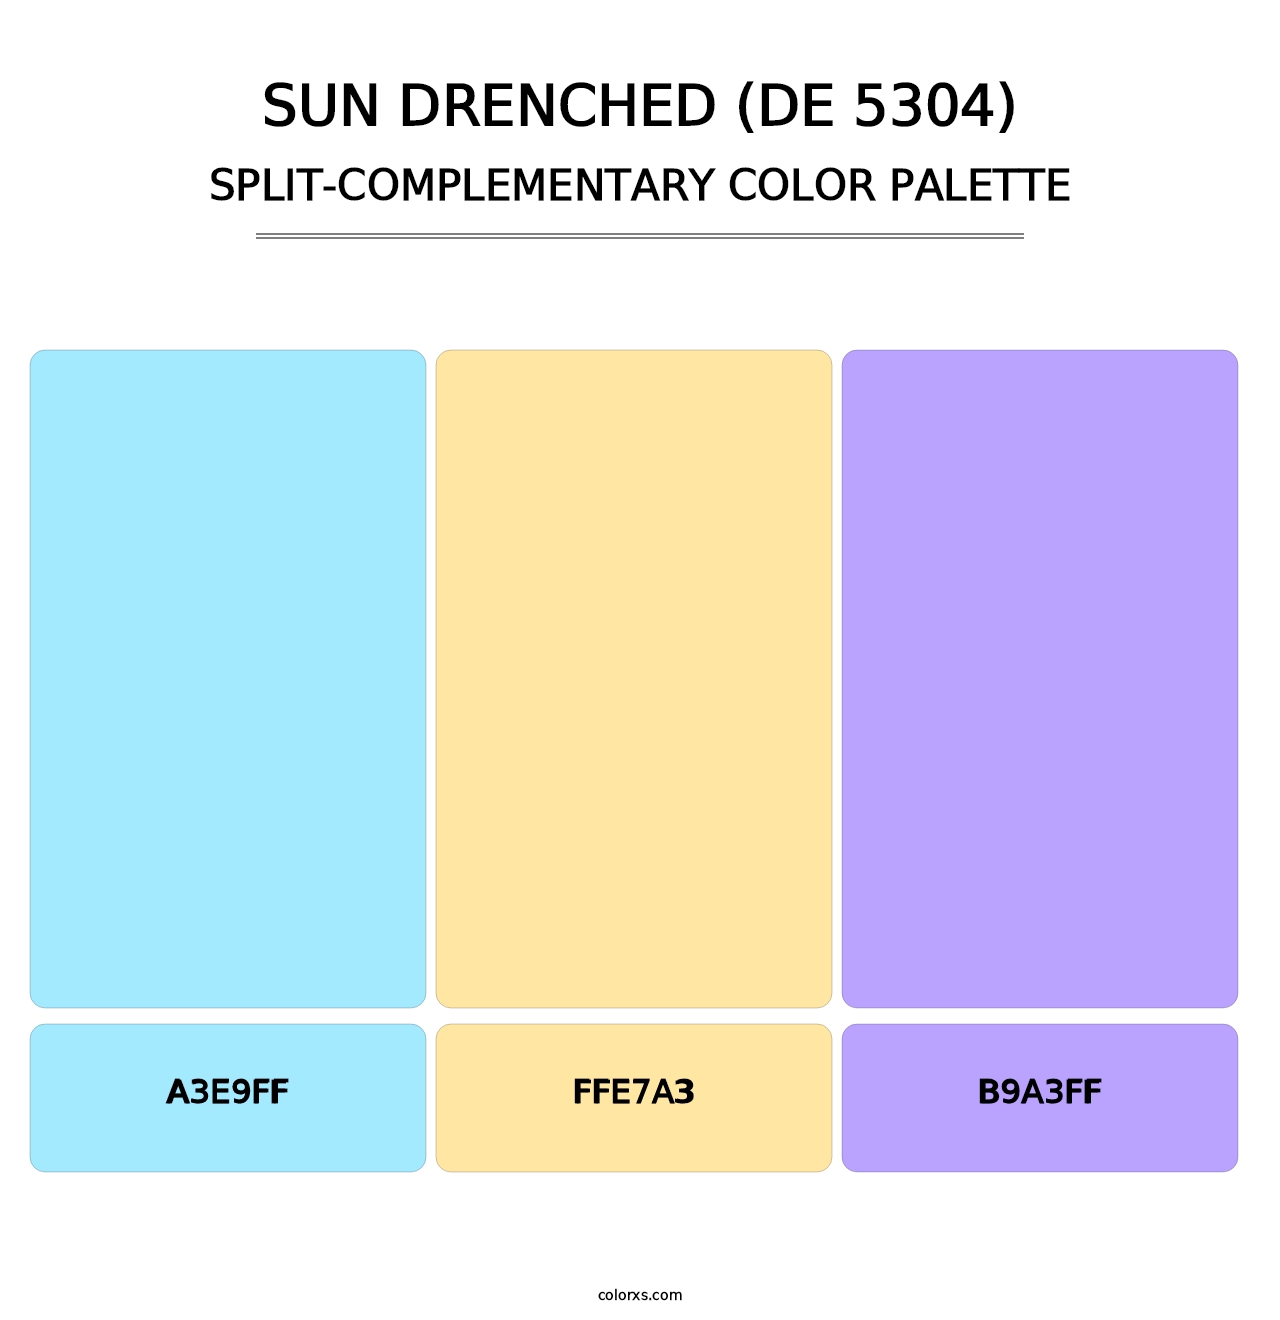 Sun Drenched (DE 5304) - Split-Complementary Color Palette